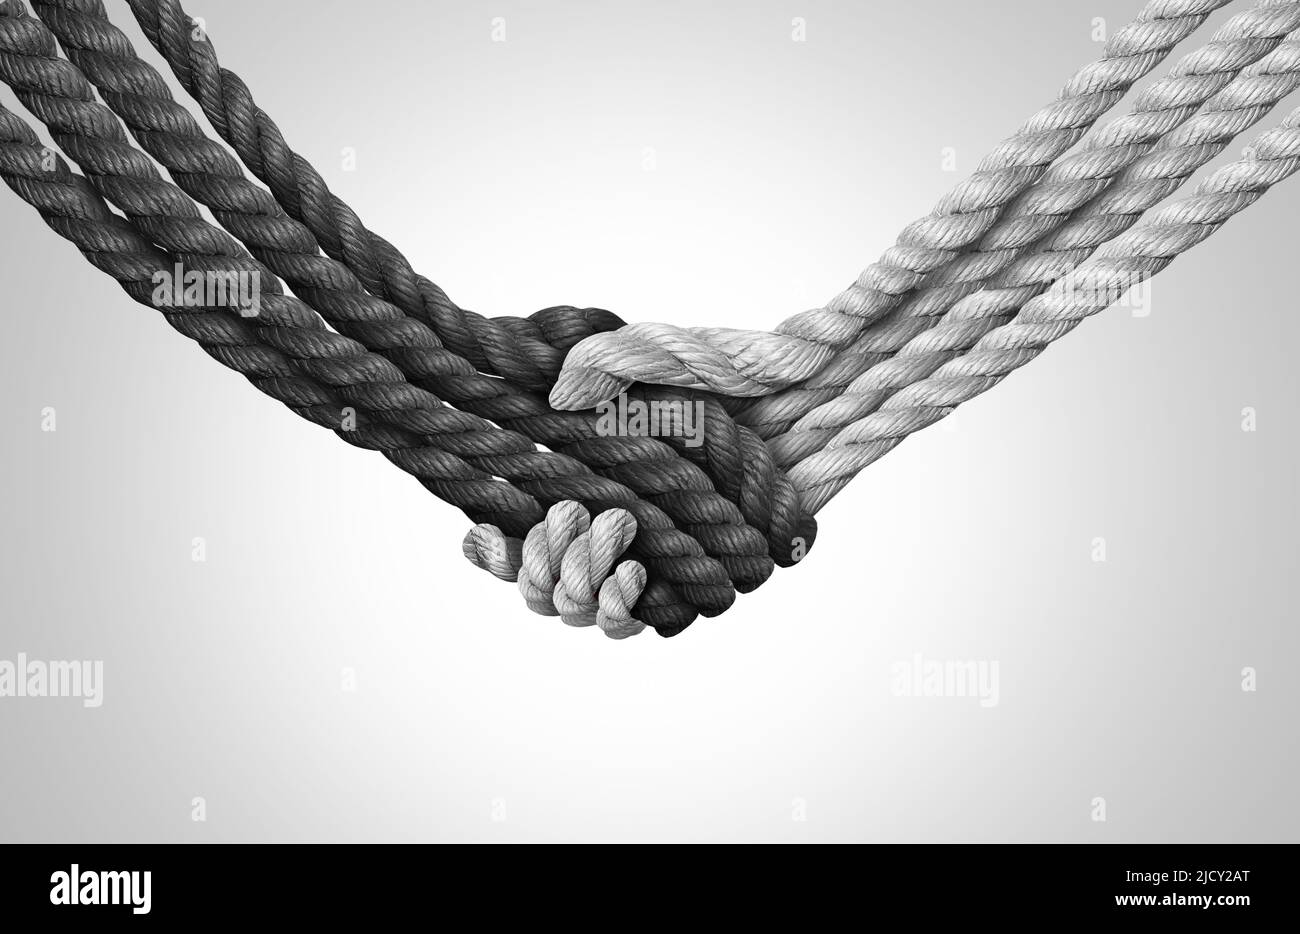 Group Trust-Konzept und verbundenes Symbol als verschiedene Seile miteinander verbunden und verbunden, geformt als Handschlag oder Handschlag als Glaubensmetapher. Stockfoto